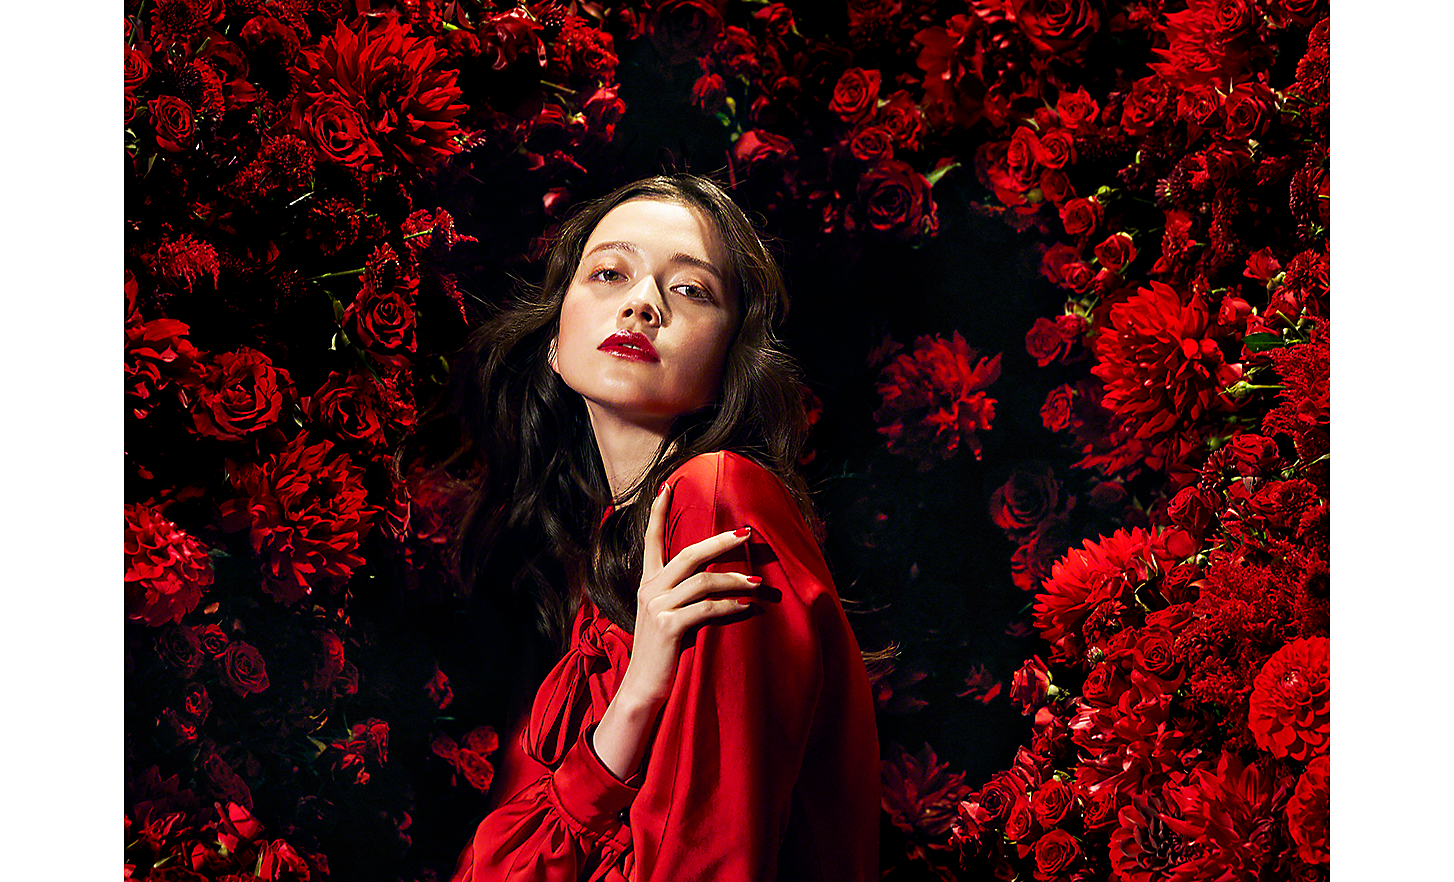 Cliché 125 mm représentant une femme vêtue de rouge au milieu de fleurs rouges